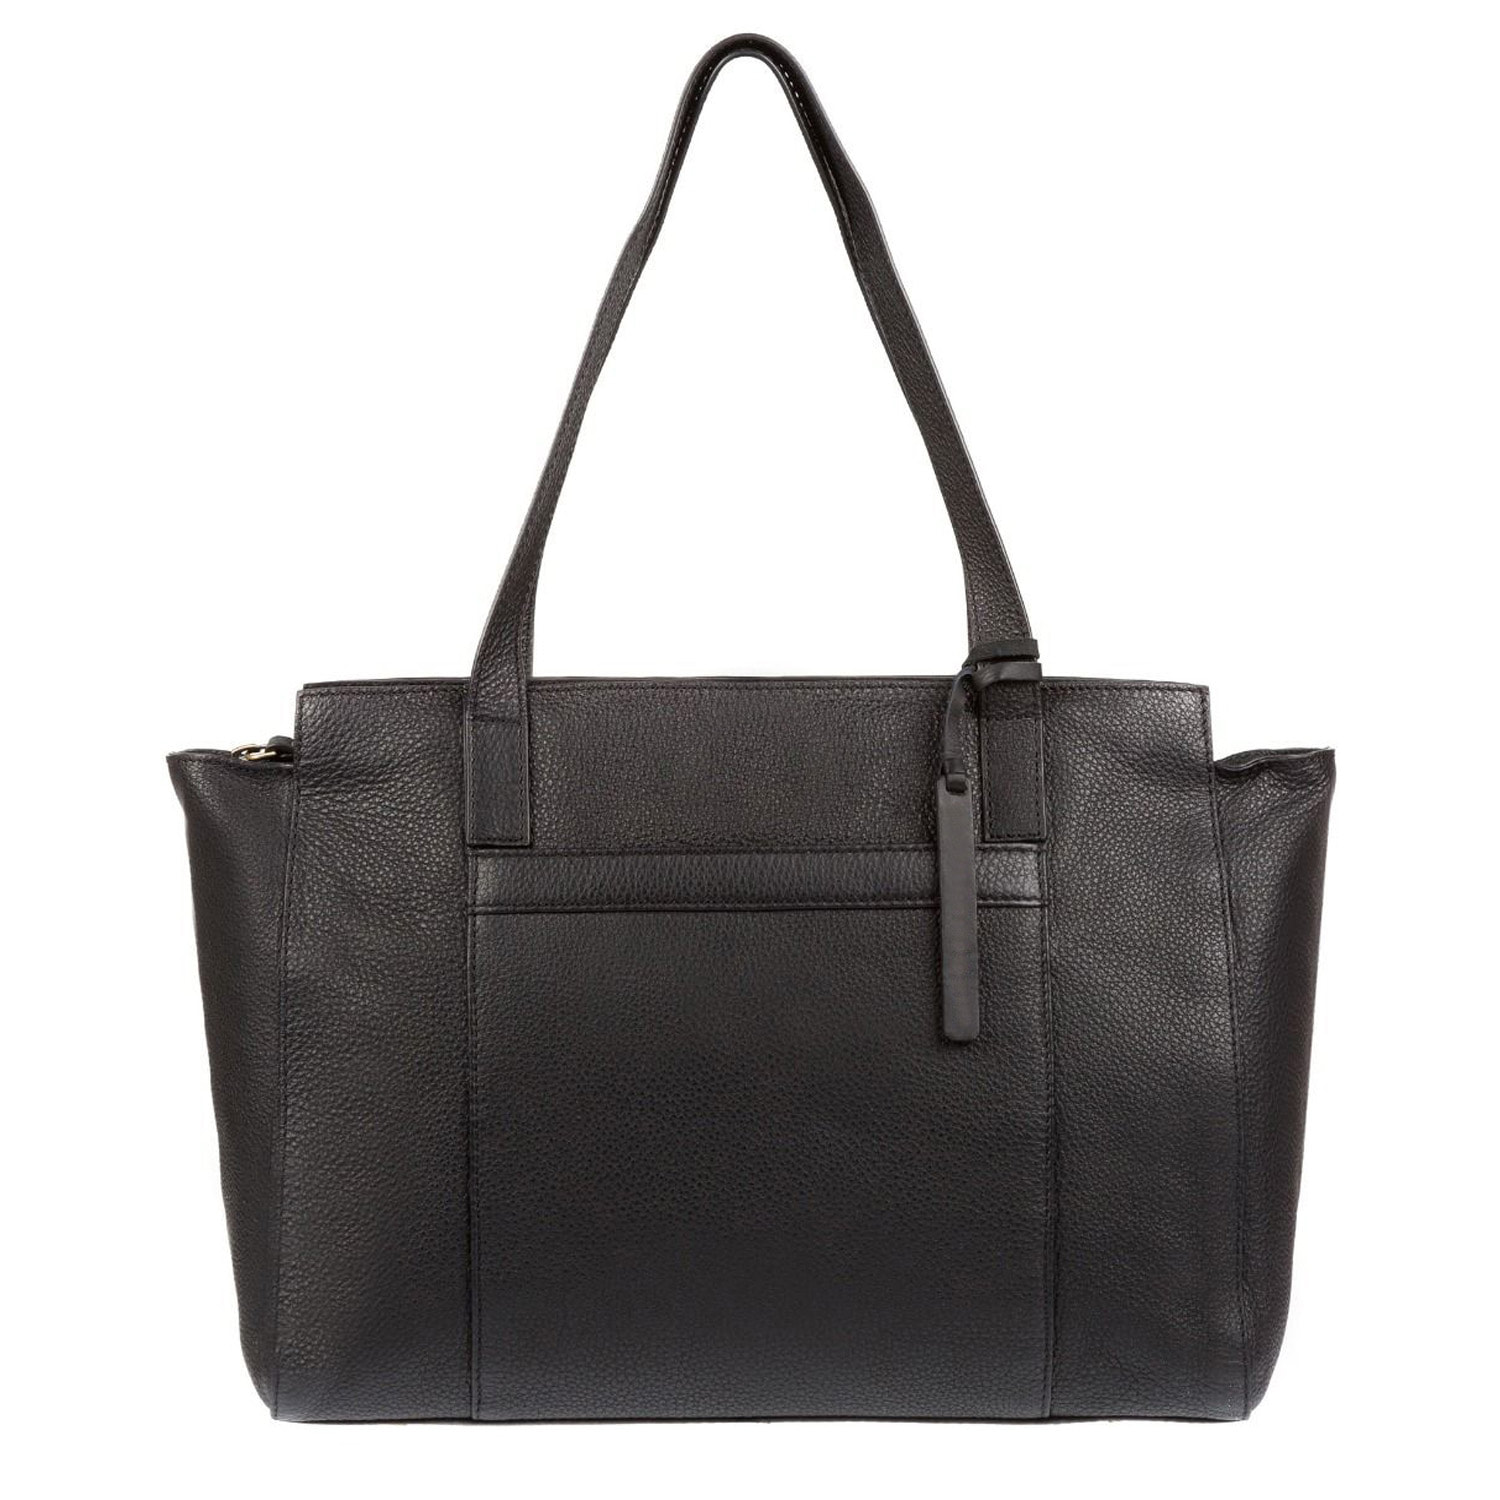 Black Leather Handbag, Shoulder Bag, Tote Bag